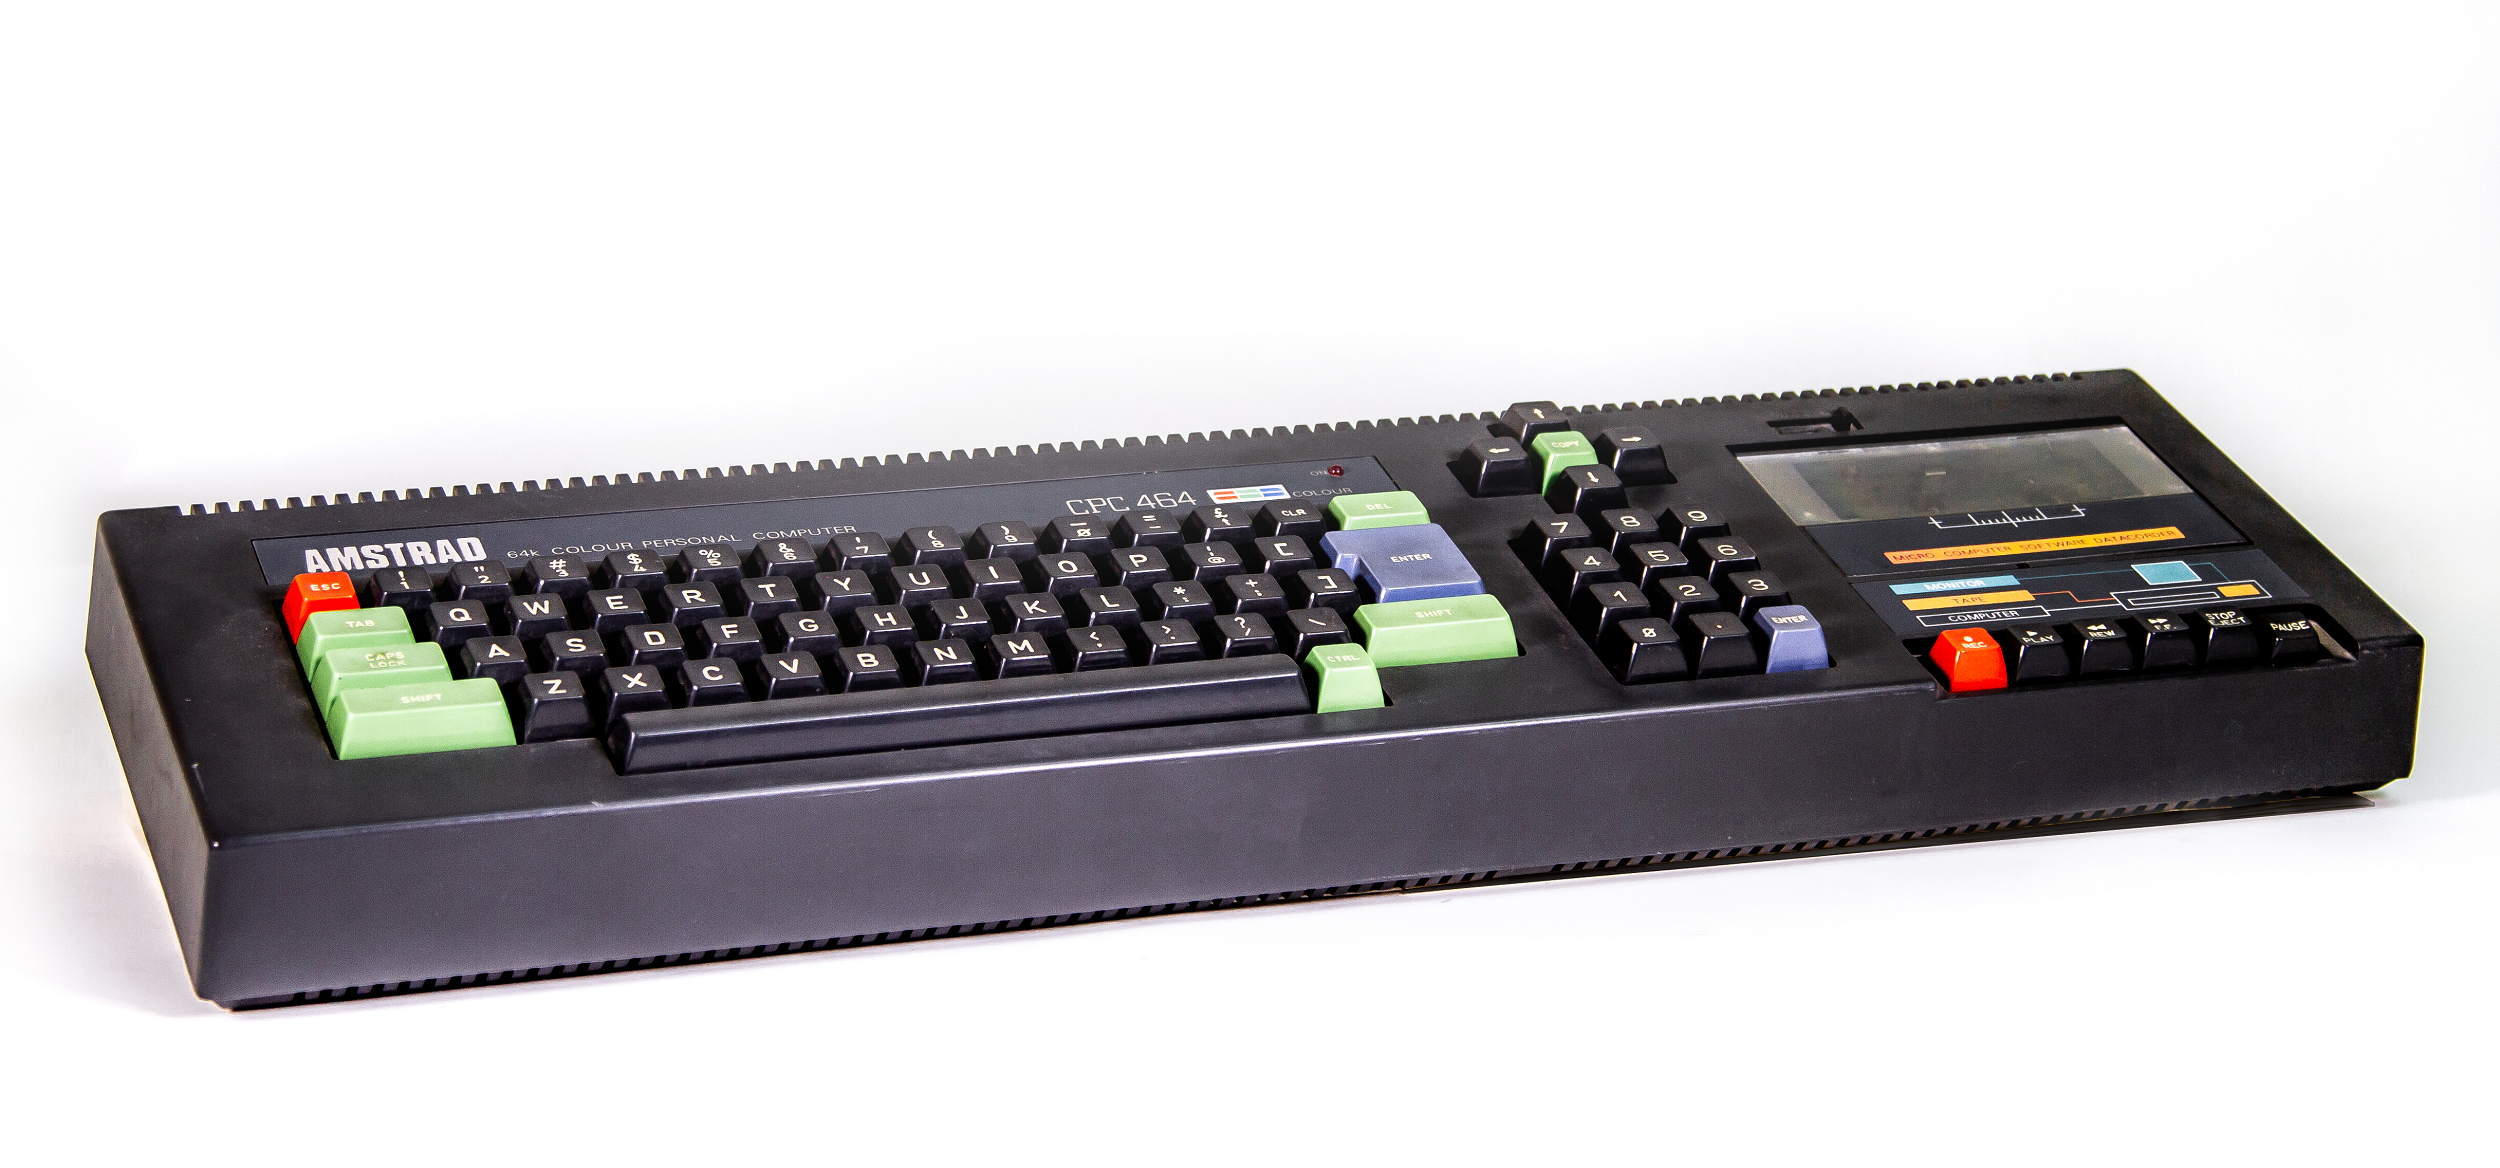 Amstrad CPC 464: Teclado